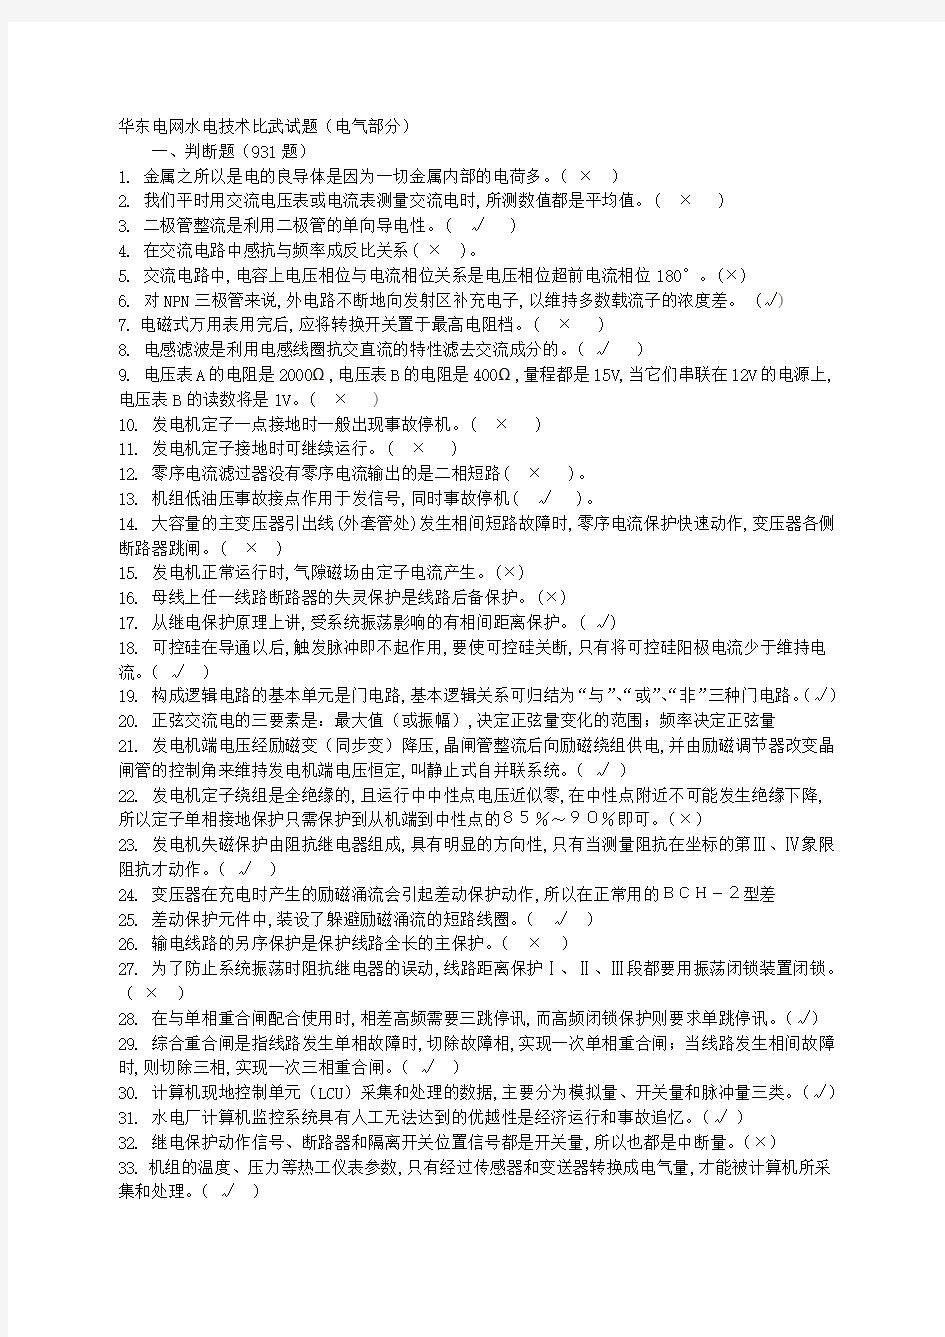 华东电网水电技术比武试题-电气部分1484题(附答案)